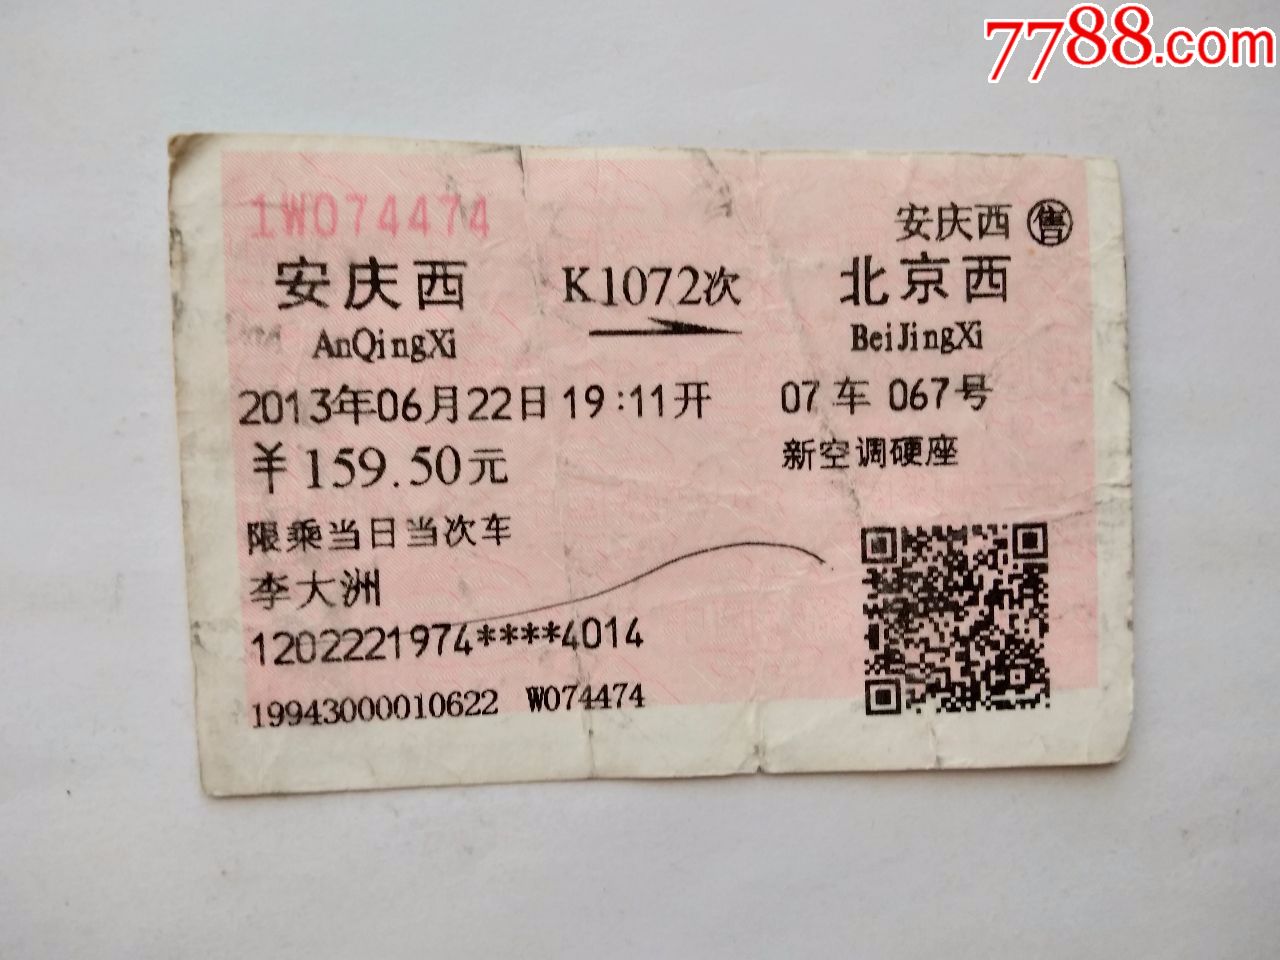 安庆西-K1072次-北京西